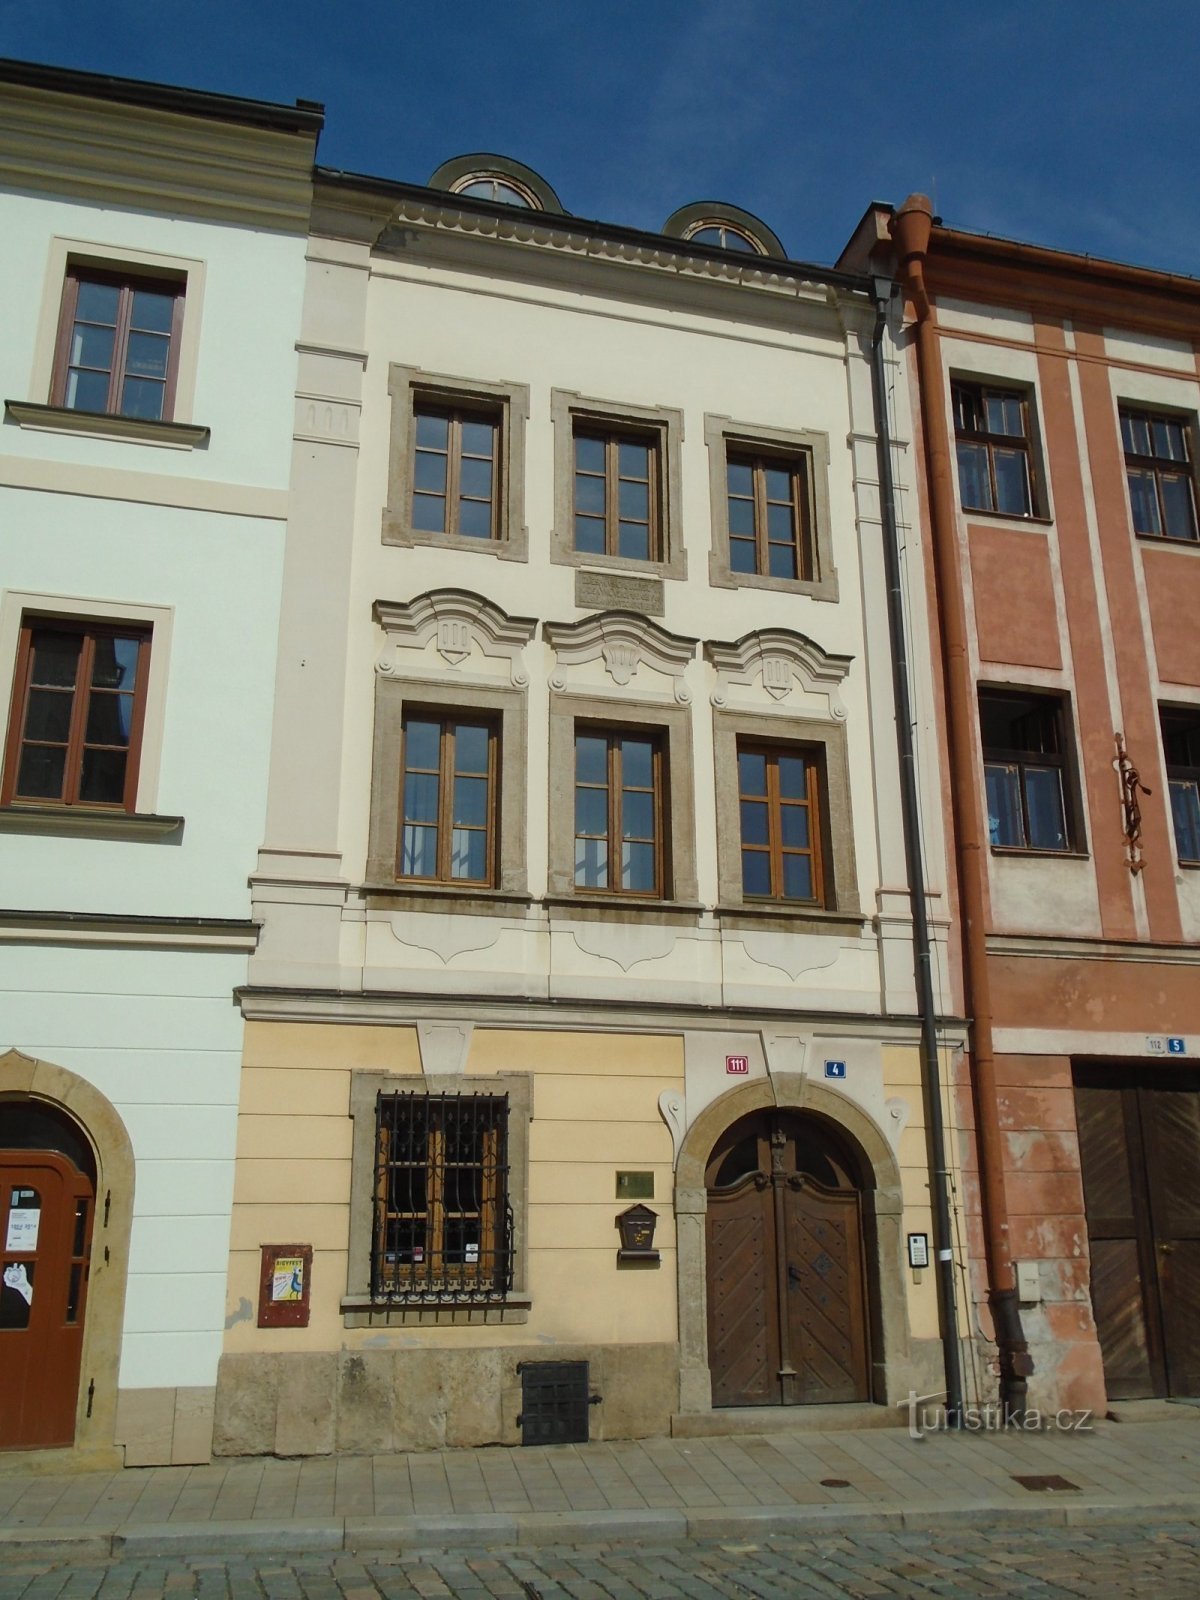 Malé náměstí br. 111 (Hradec Králové, 16.9.2018. travnja XNUMX.)